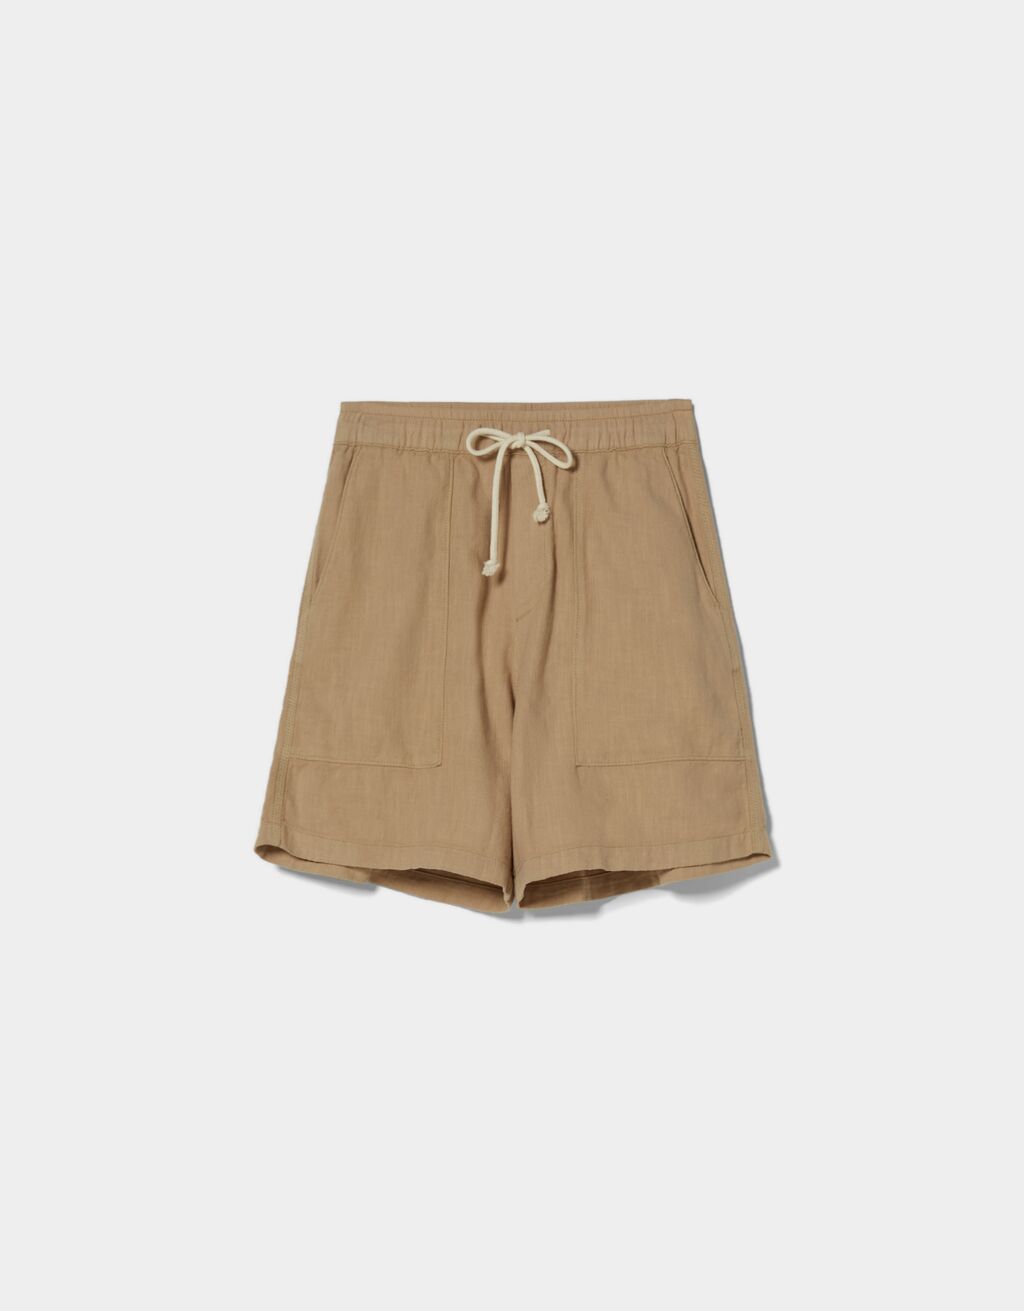 Linen blend cotton Bermuda sweatpant shorts